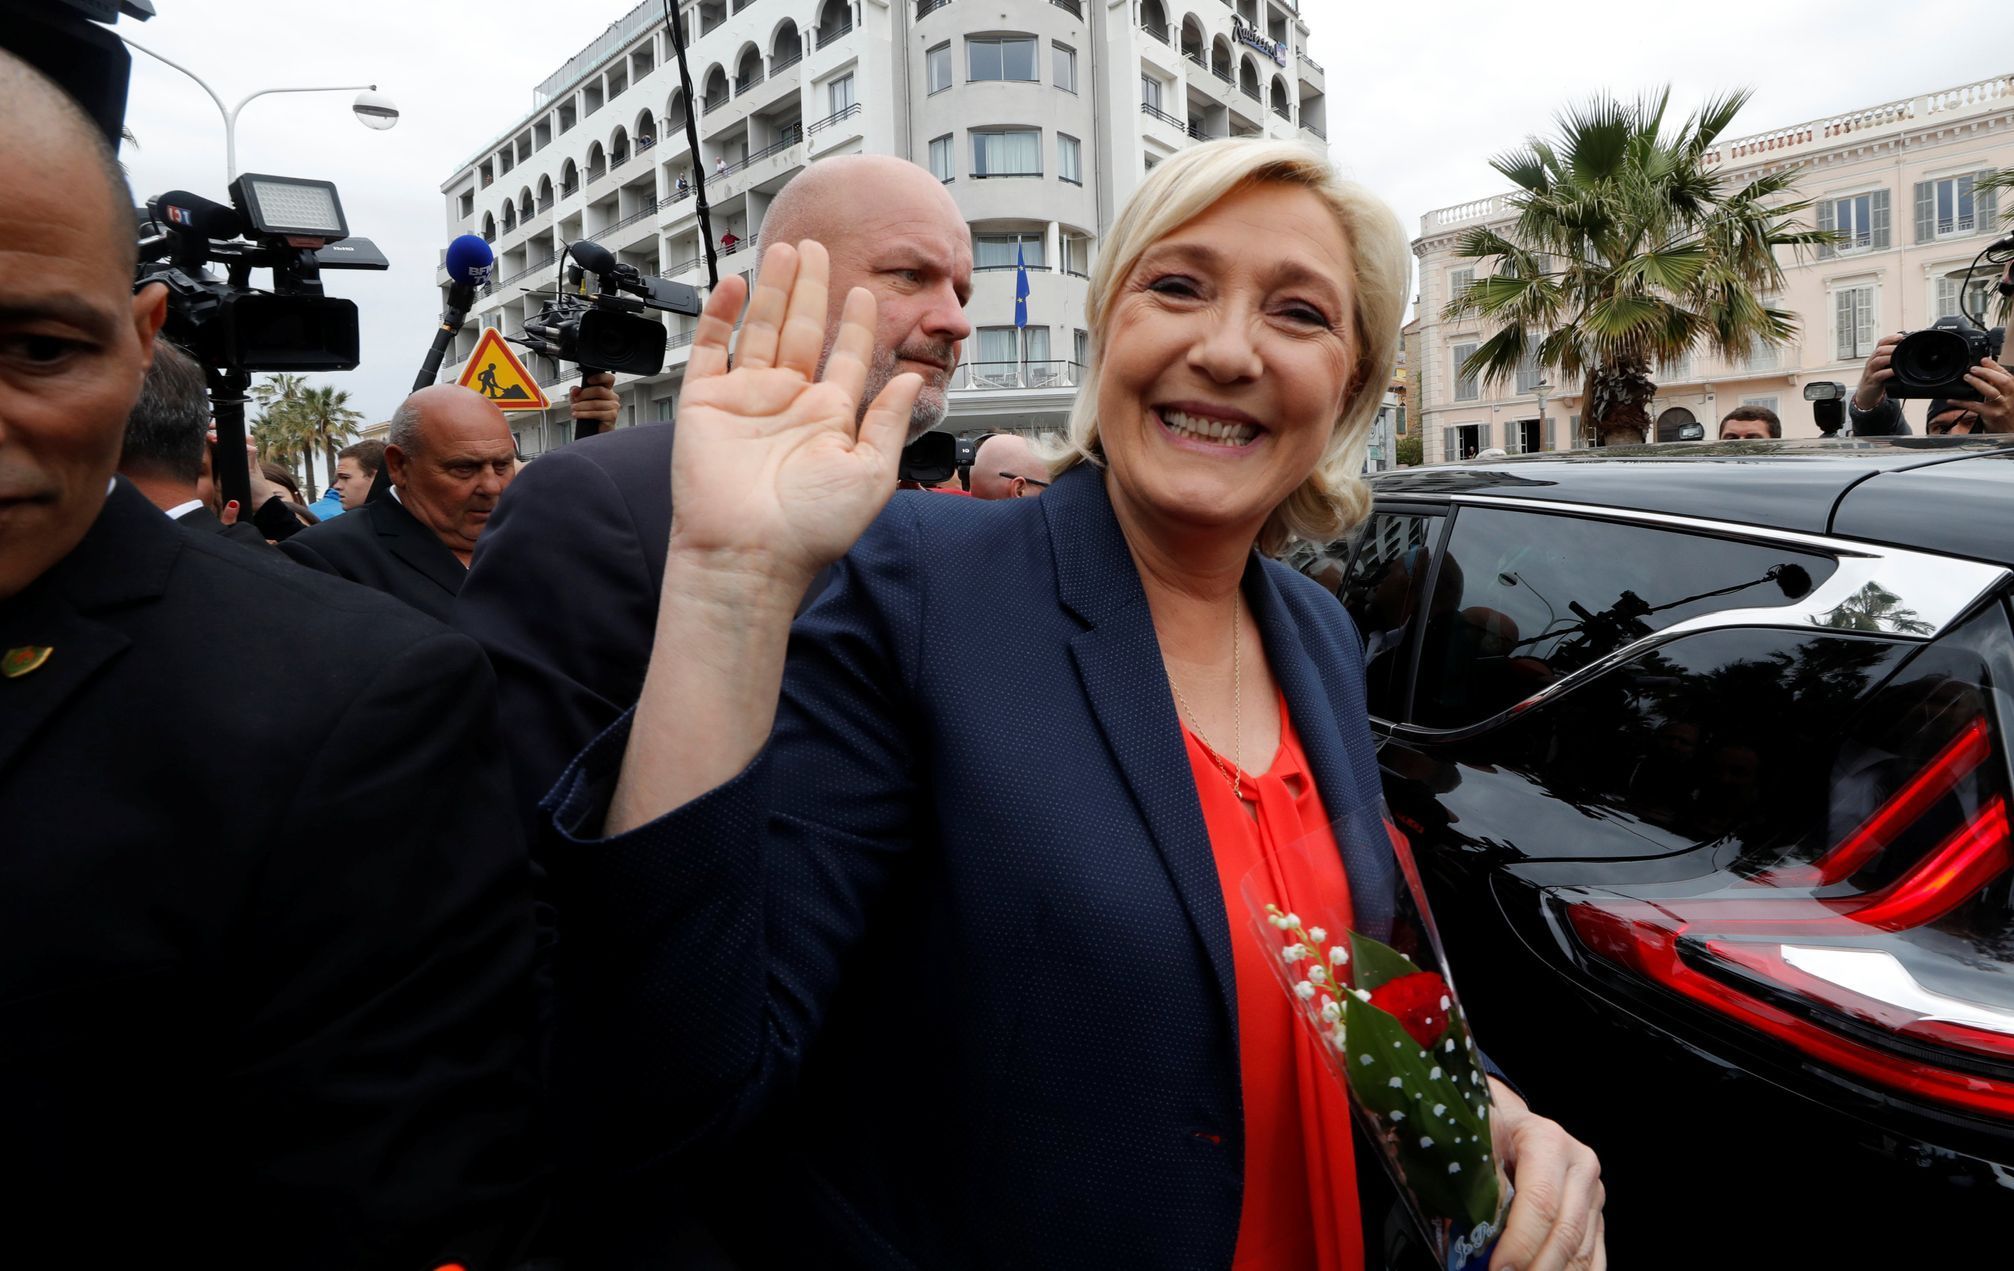 Marine Le Pen Penová Populisti Nice Národní fronta